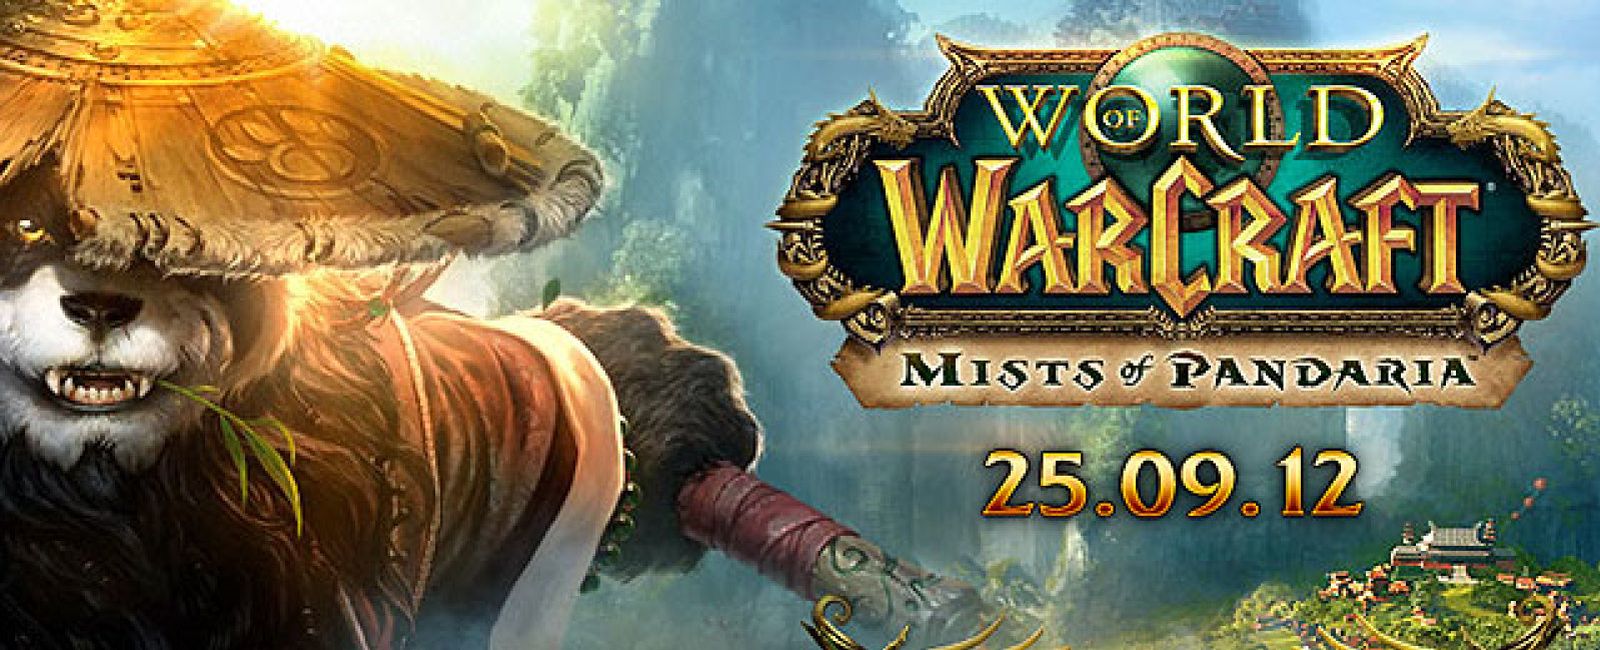 Foto: El videojuego 'World of Warcraft' lanza una ambiciosa expansión